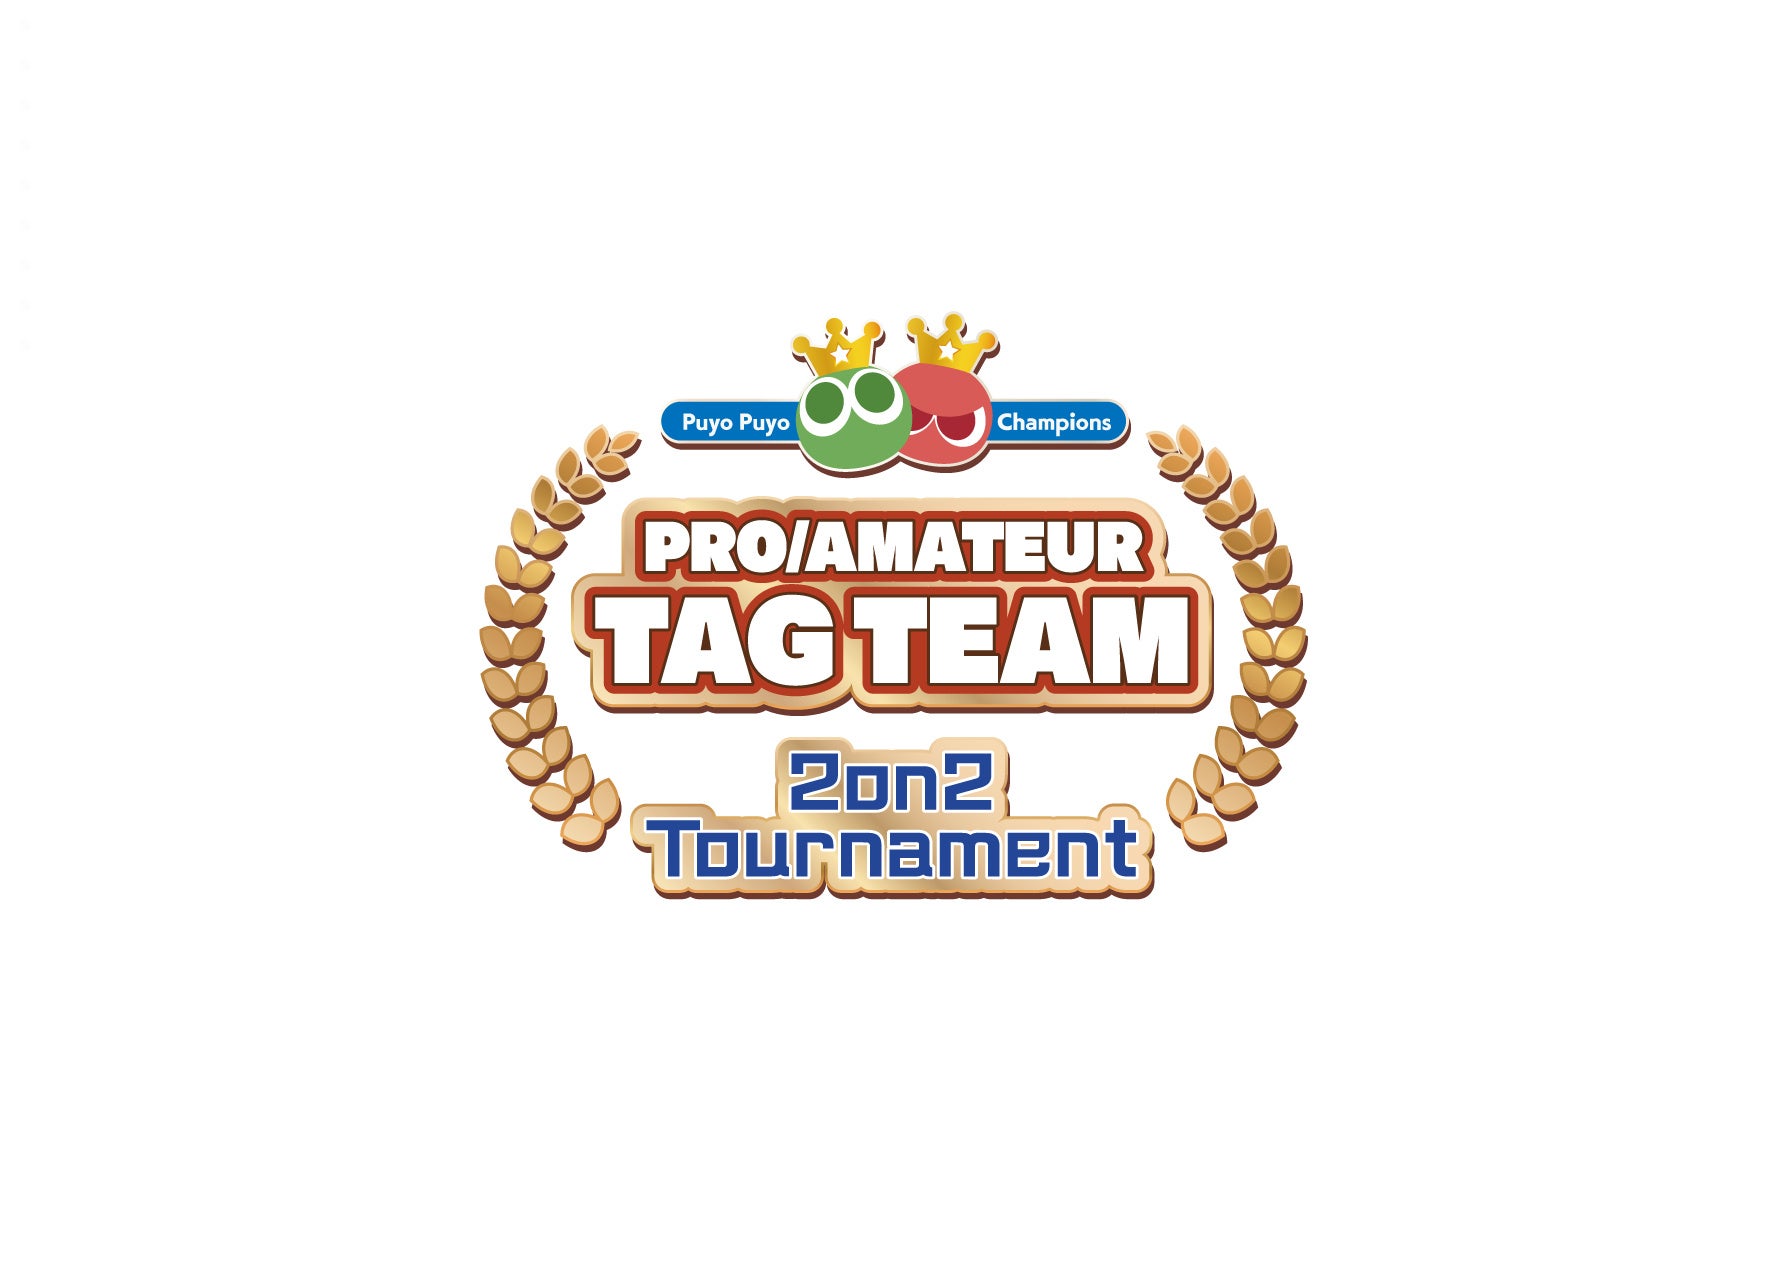 新企画「ぷよぷよ」2on2エキシビション大会「”Puyo Puyo Champions” Pro/Amateur Tag Team 2on2 Tournament」